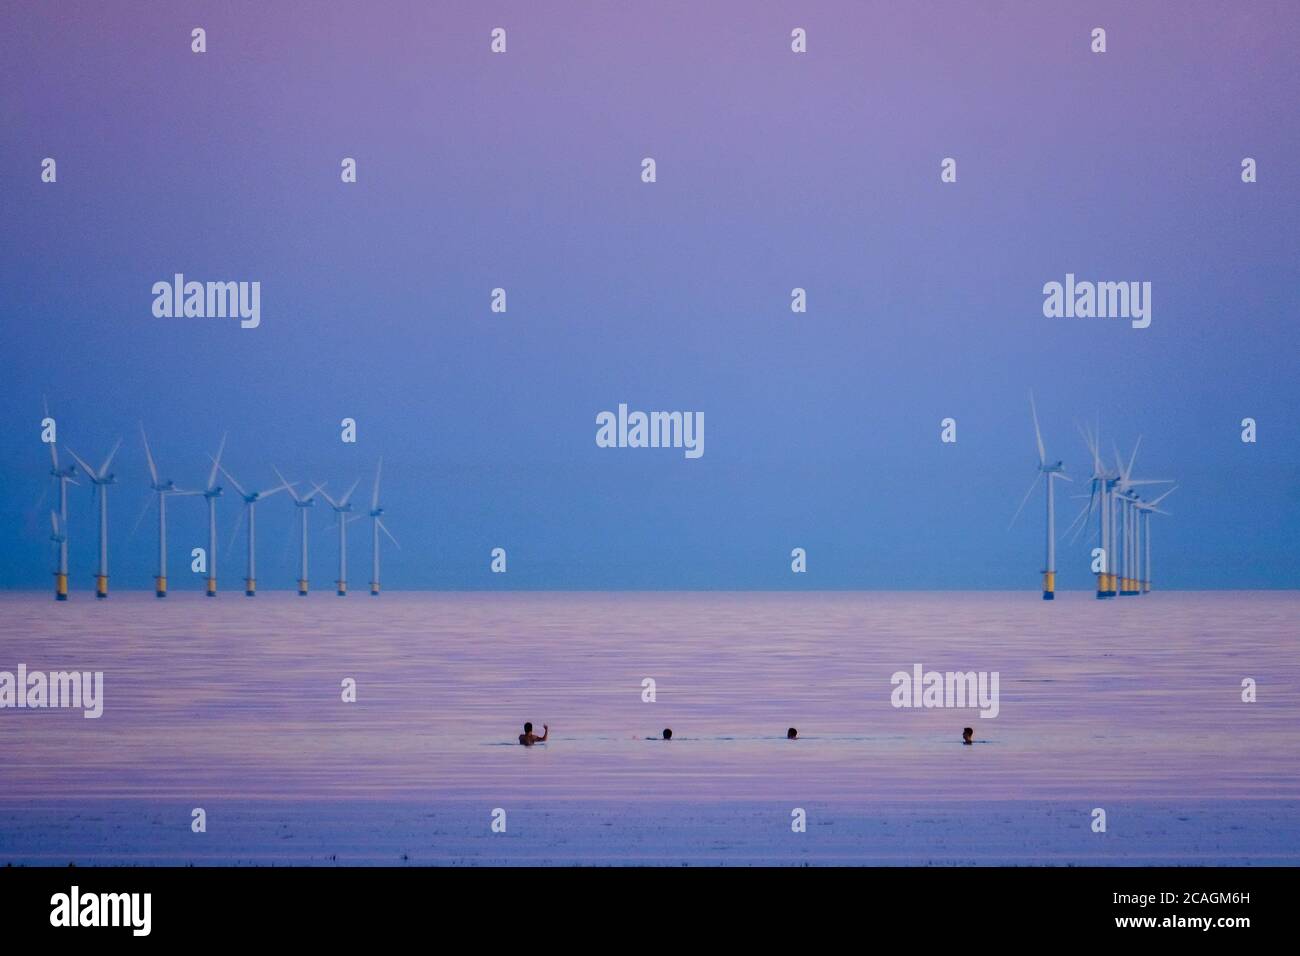 Worthing Beach, Worthing, Reino Unido. 6 de agosto de 2020. La gente nade en el mar tranquilo mientras el sol se pone brillando en una cálida noche de verano. El Parque Eólico de Rampion se puede ver en el fondo, 13km-16km de la costa. Imagen de crédito: Julie Edwards/Alamy Live News Foto de stock